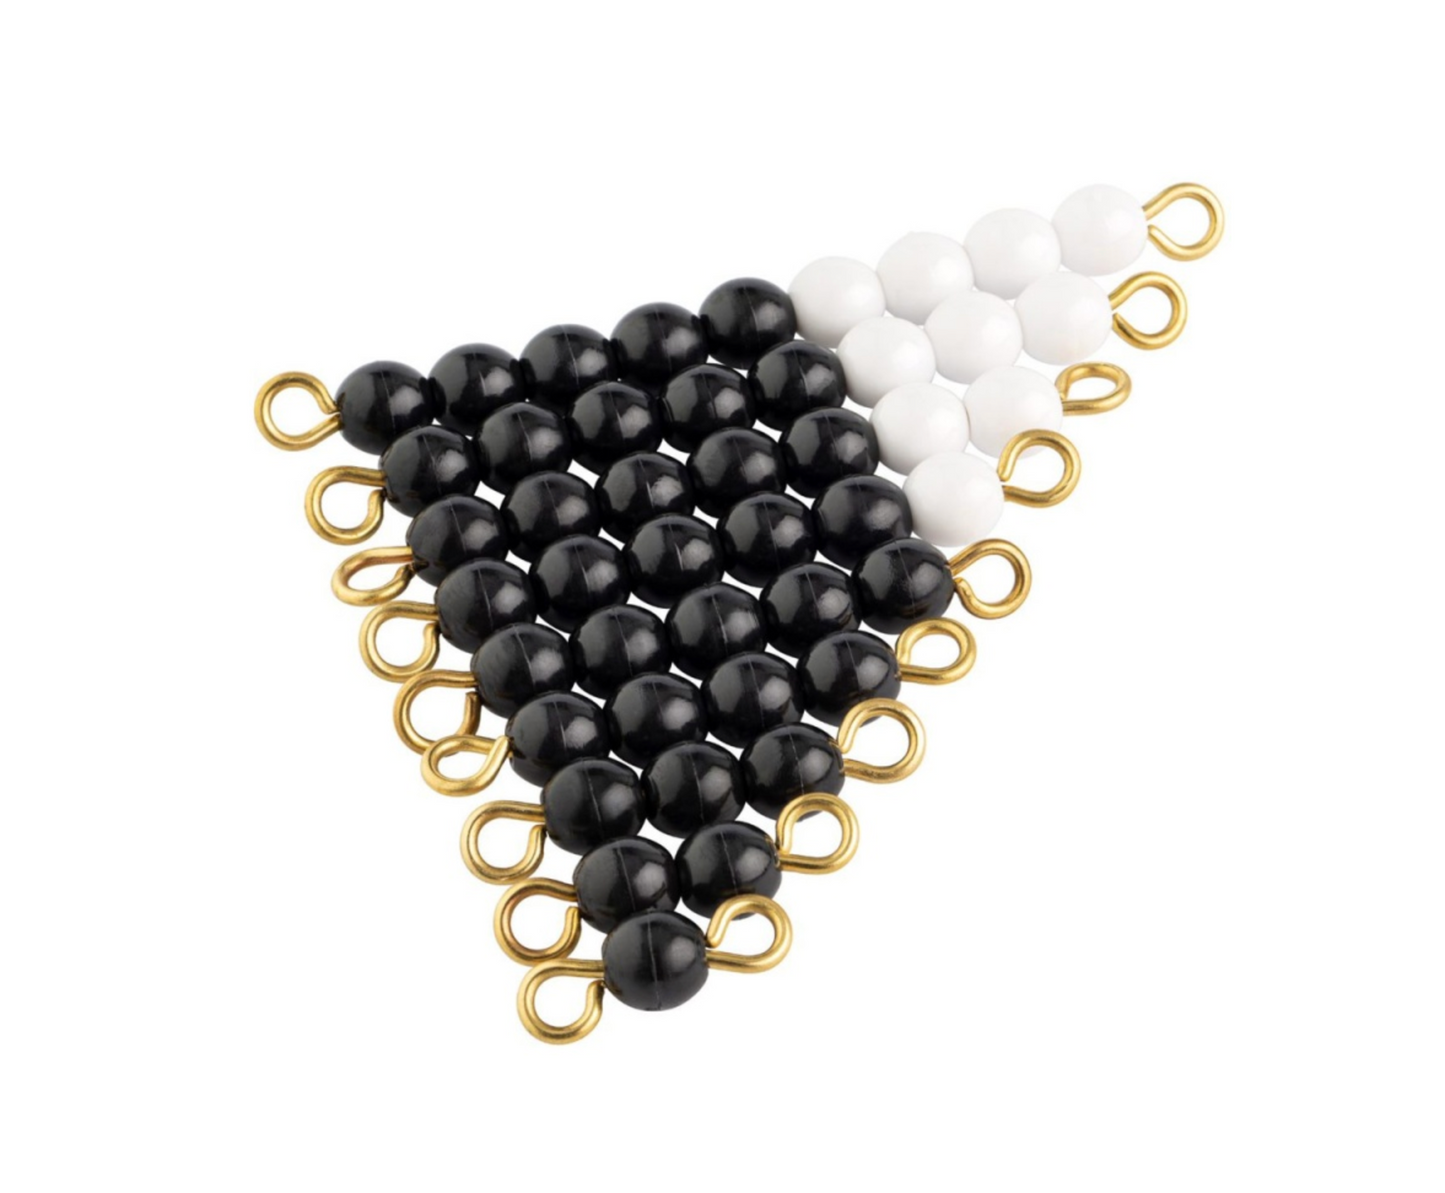 Escalier de perles noires et blanches - GAM AMI